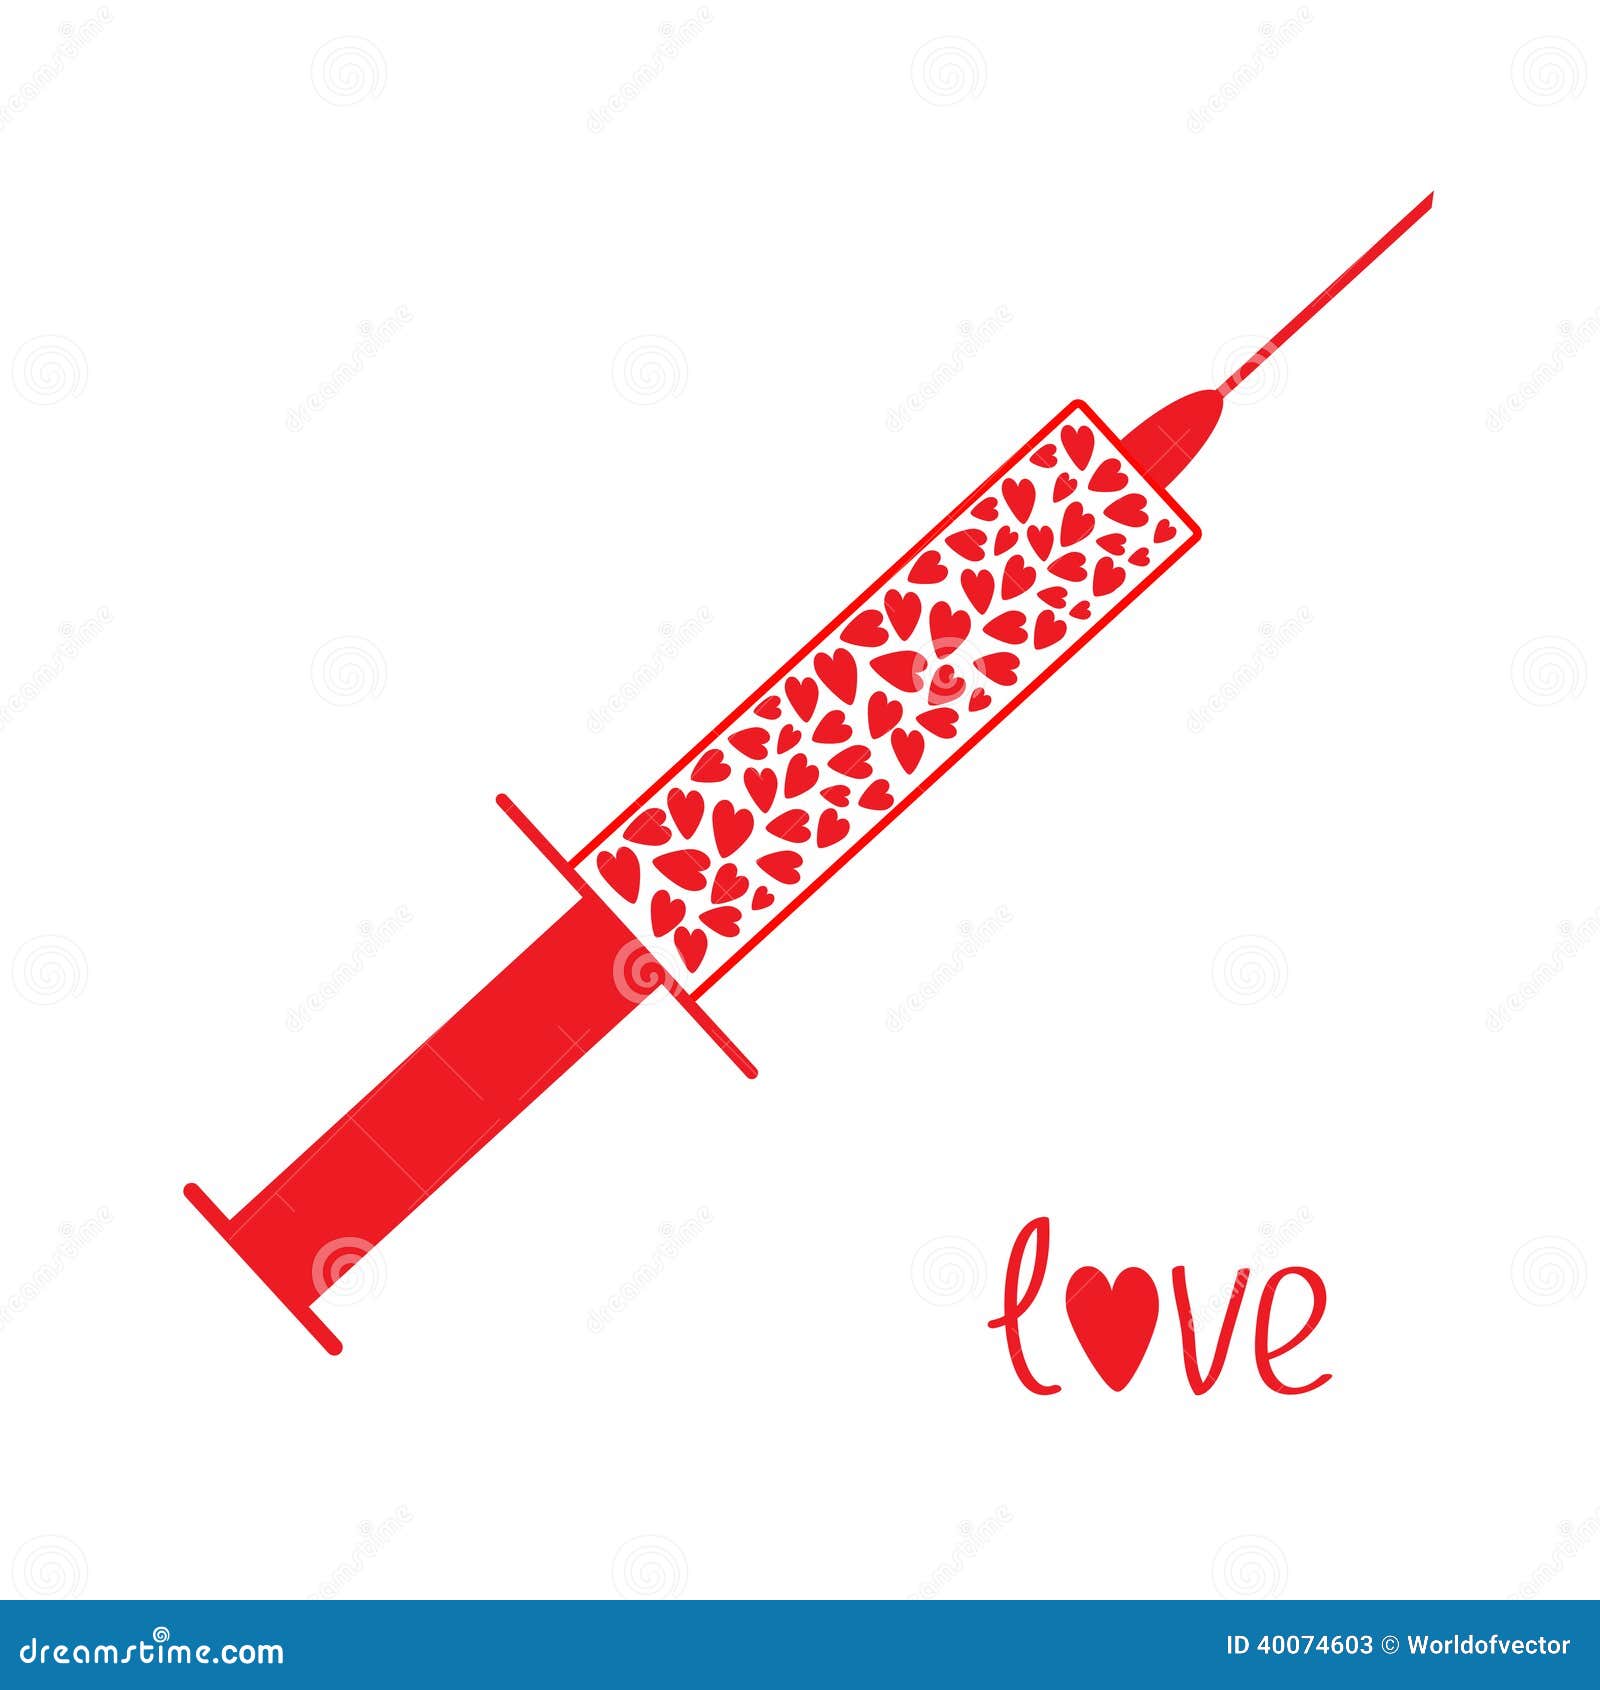 medical-syringe-red-hearts-inside-love-c